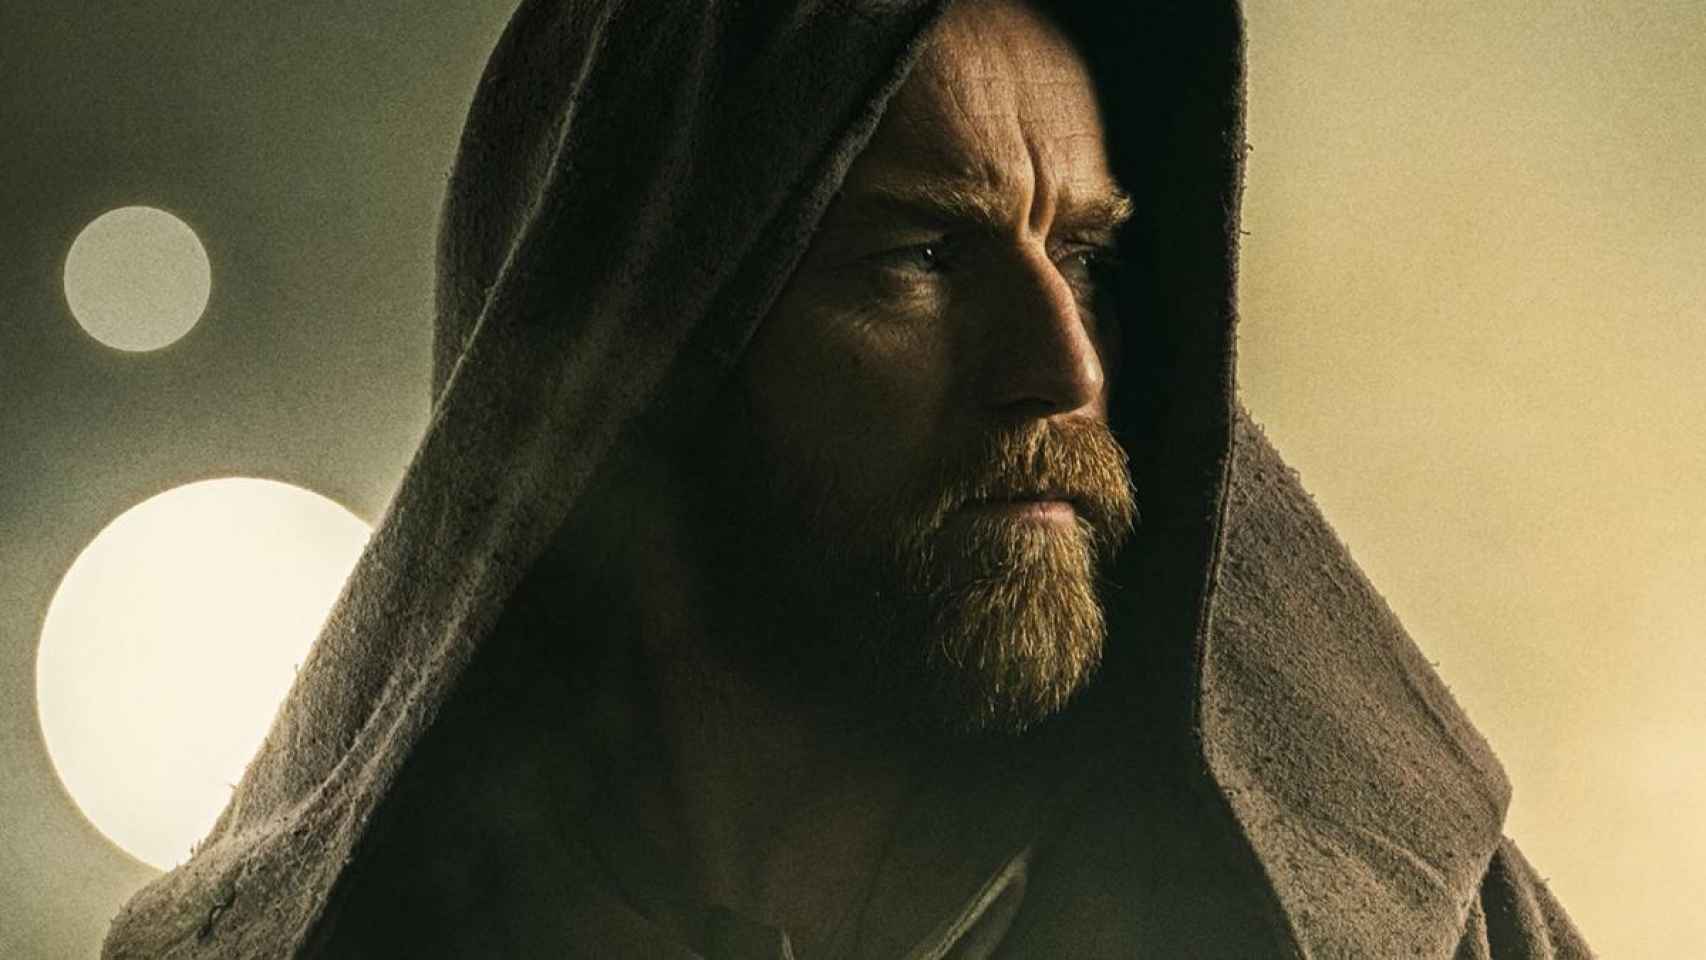 'Obi-Wan Kenobi'